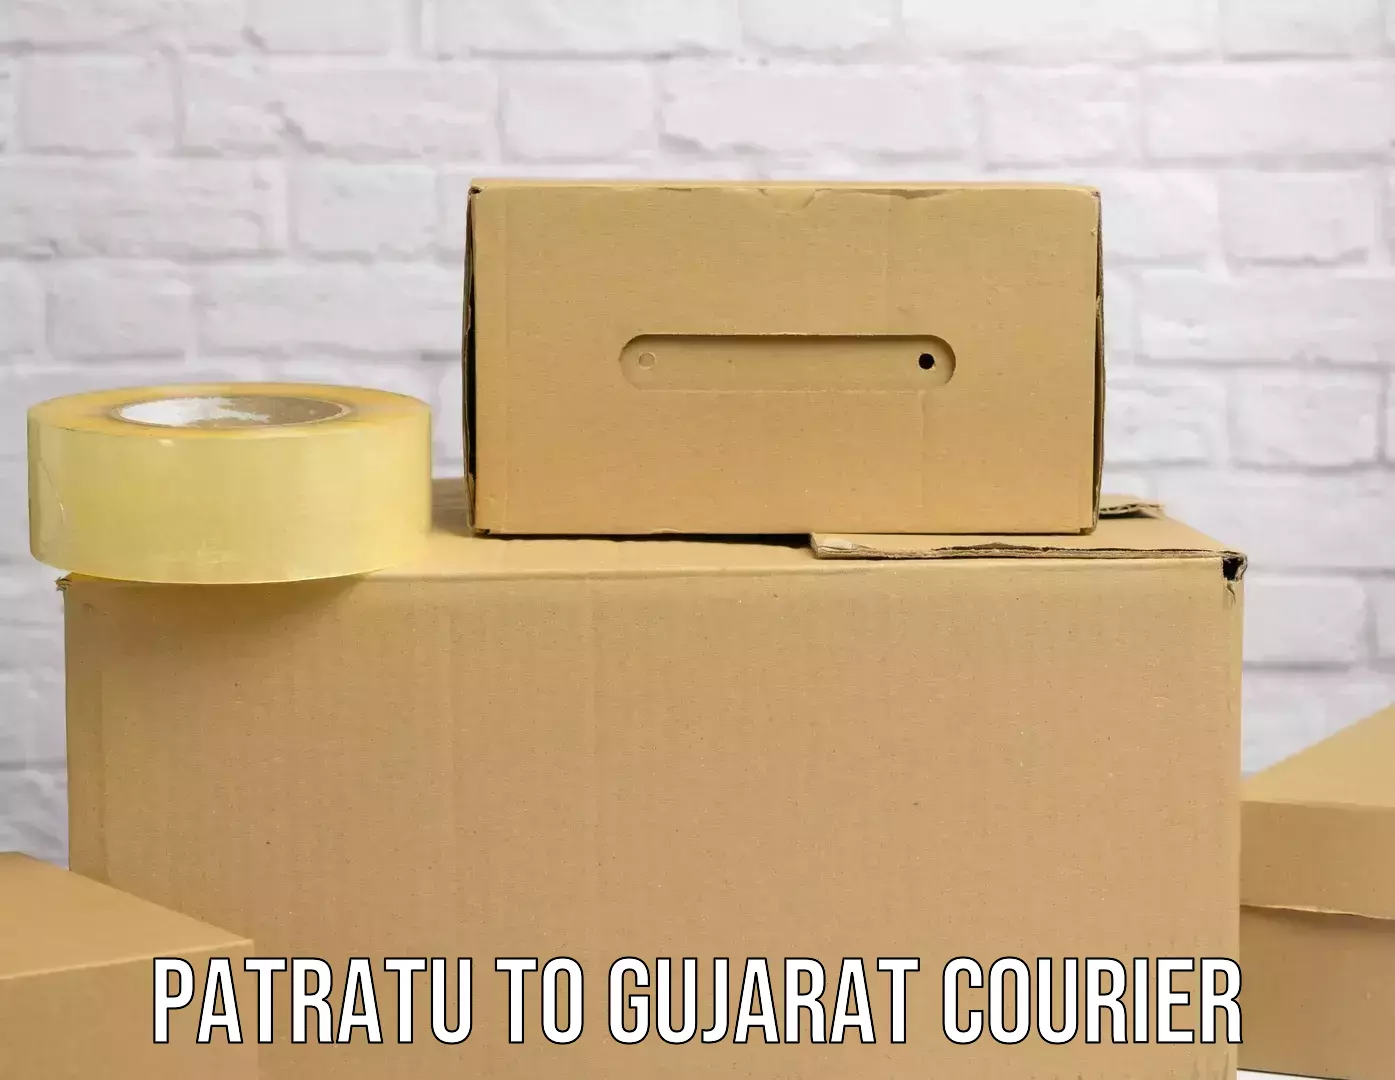 Courier service comparison Patratu to Borsad